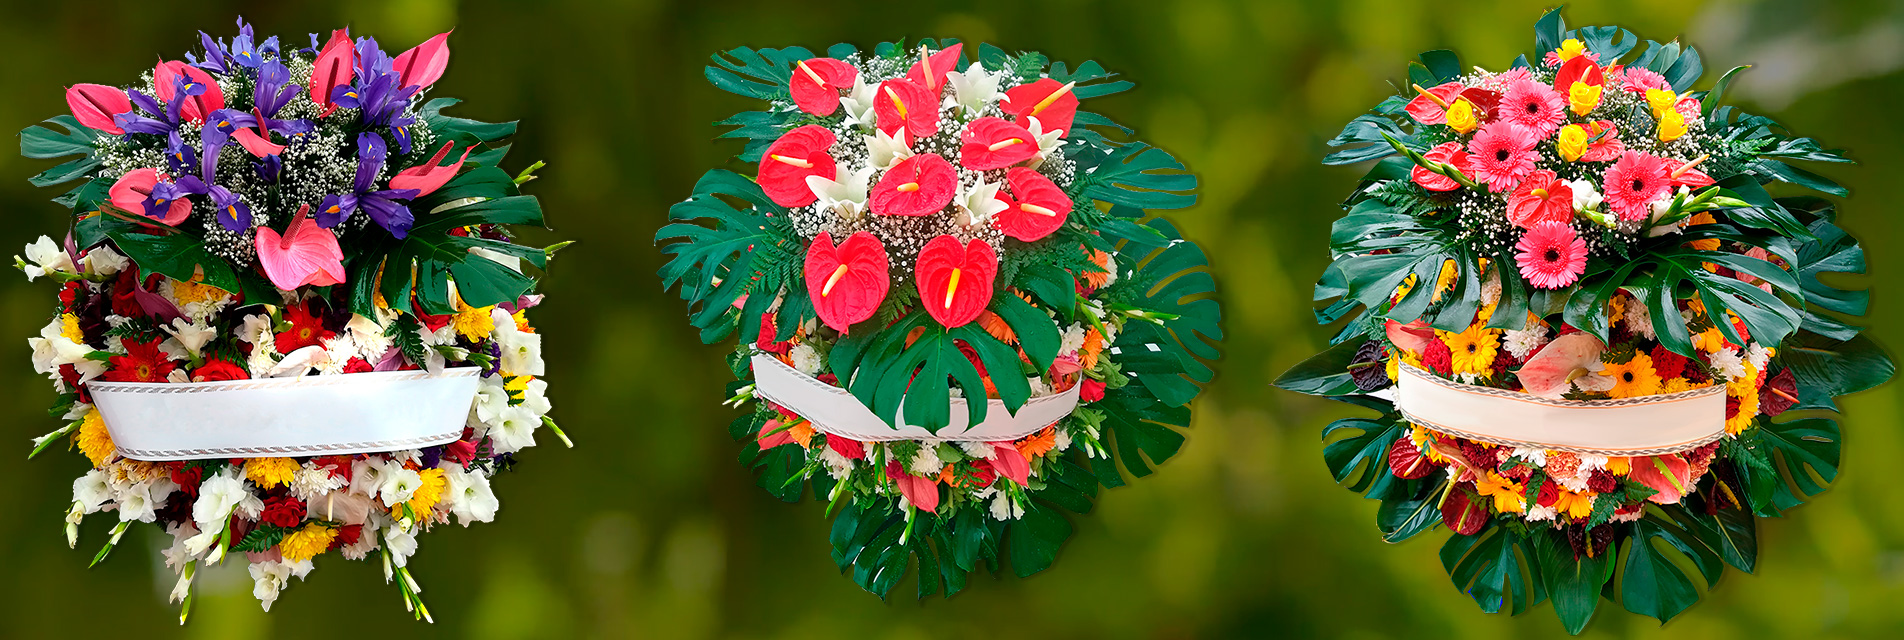 Coronas con cabeza de flores, catalogo floristeria Los Realejos Tenerife